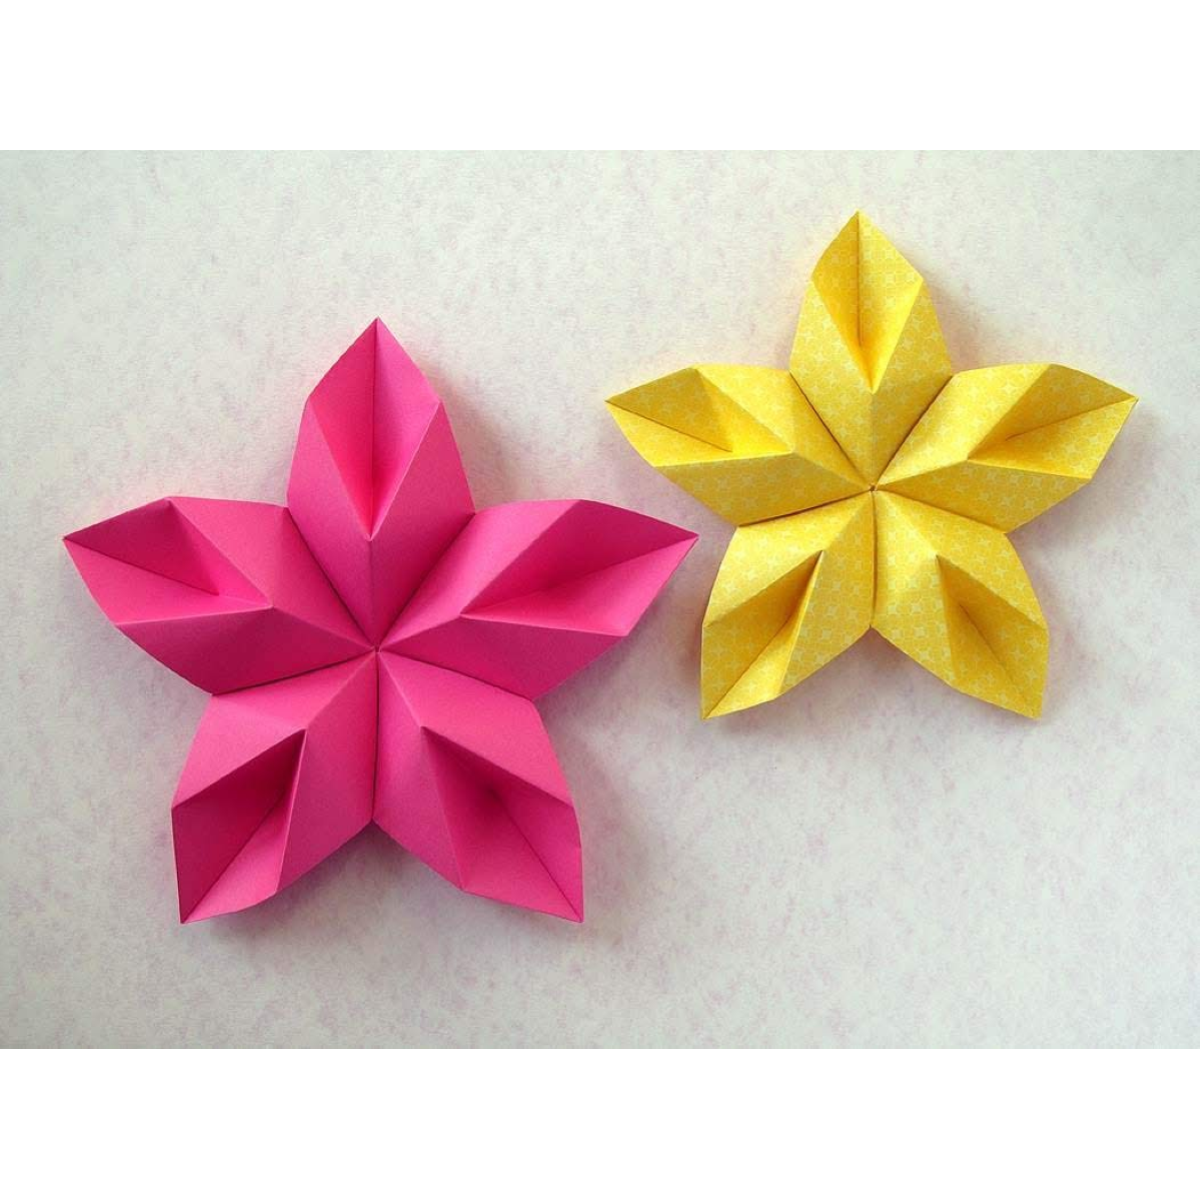 Carta origami cm.10x10 100ff. - Nadir Cancelleria